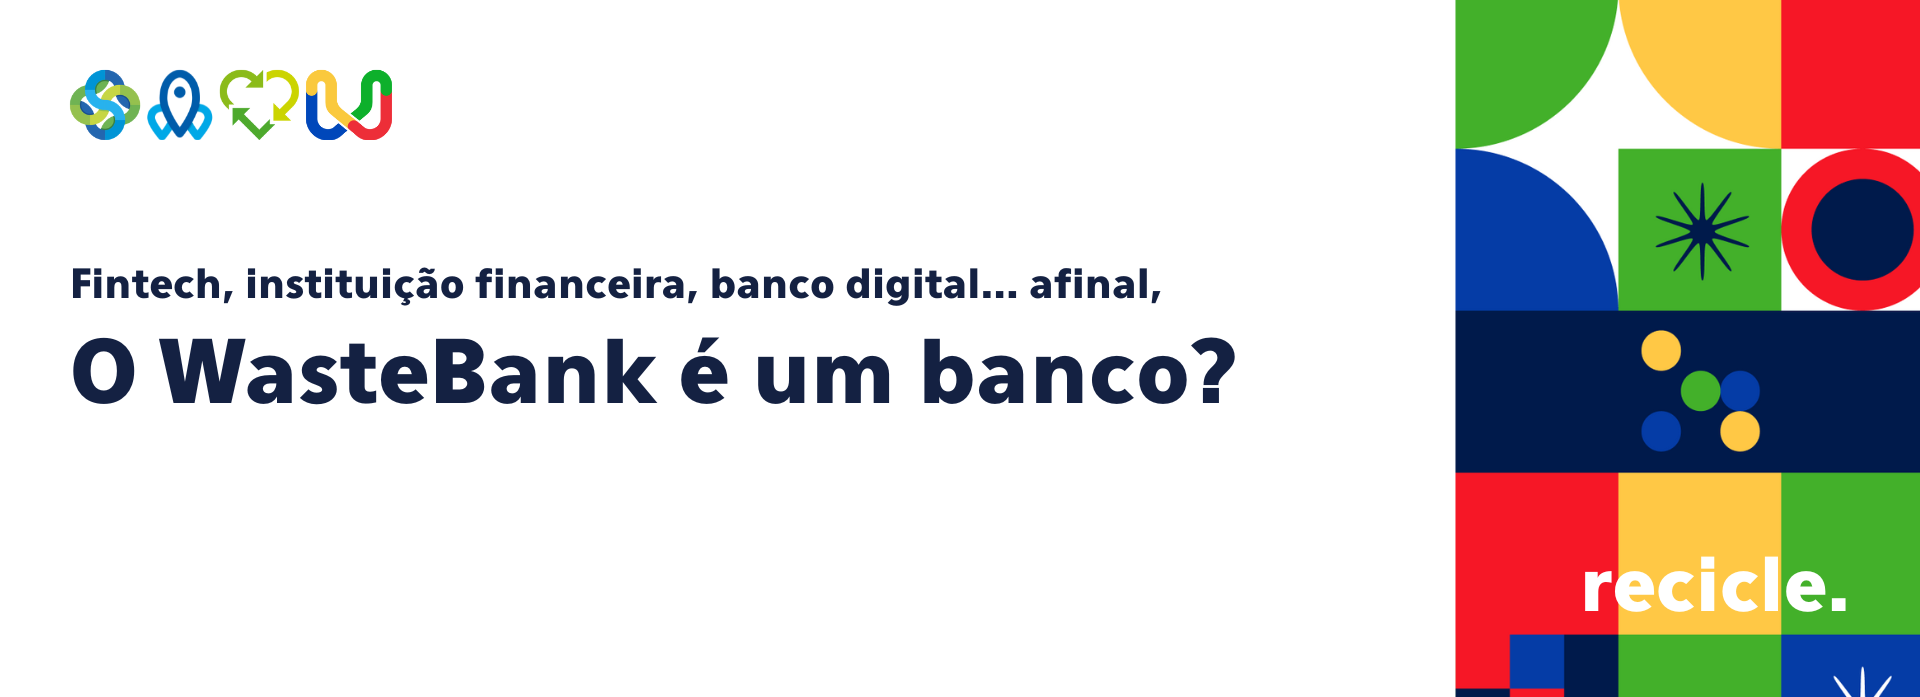 Fintech, instituição financeira, banco digital… afinal, o WasteBank é um banco?